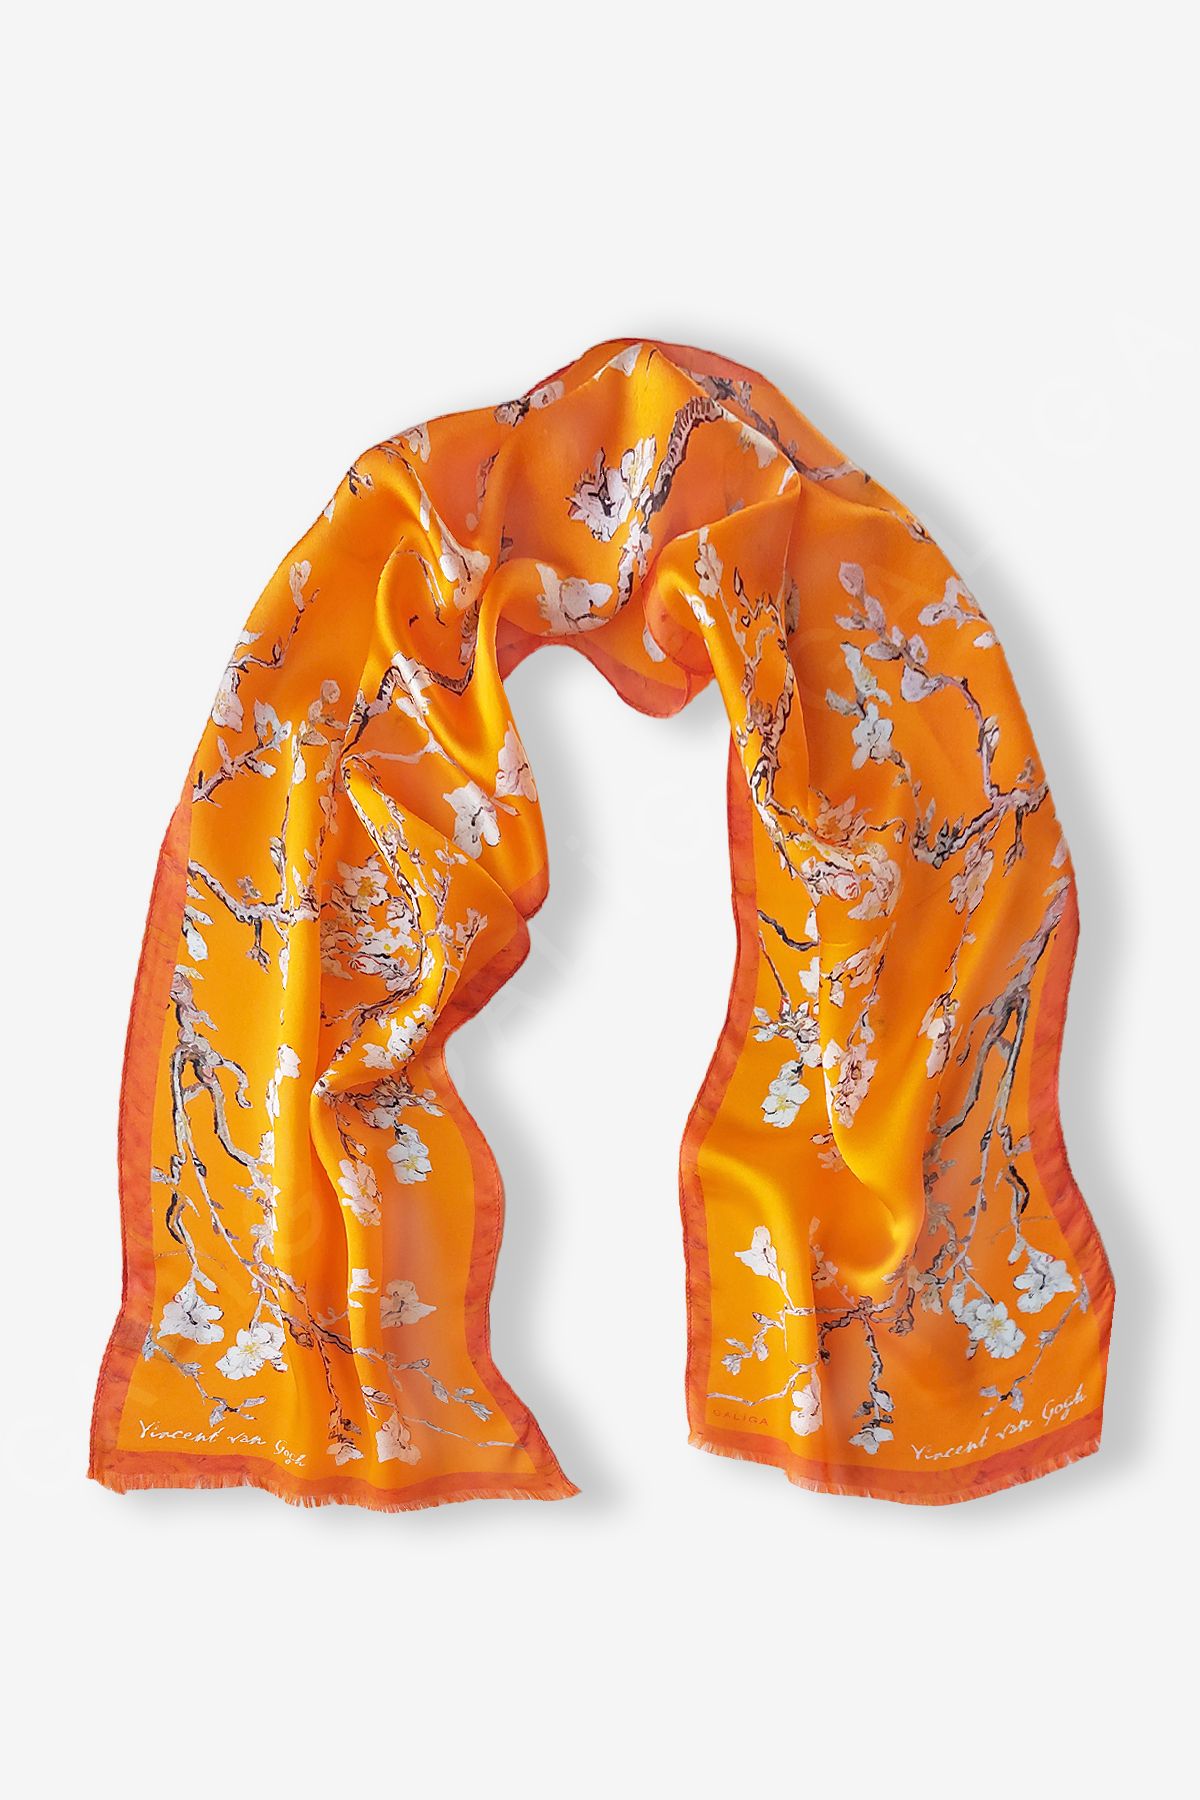 Galiga Van Gogh - Badem Ağacı Oranj %100 Ipek Fular 26*130cm Art On Silk